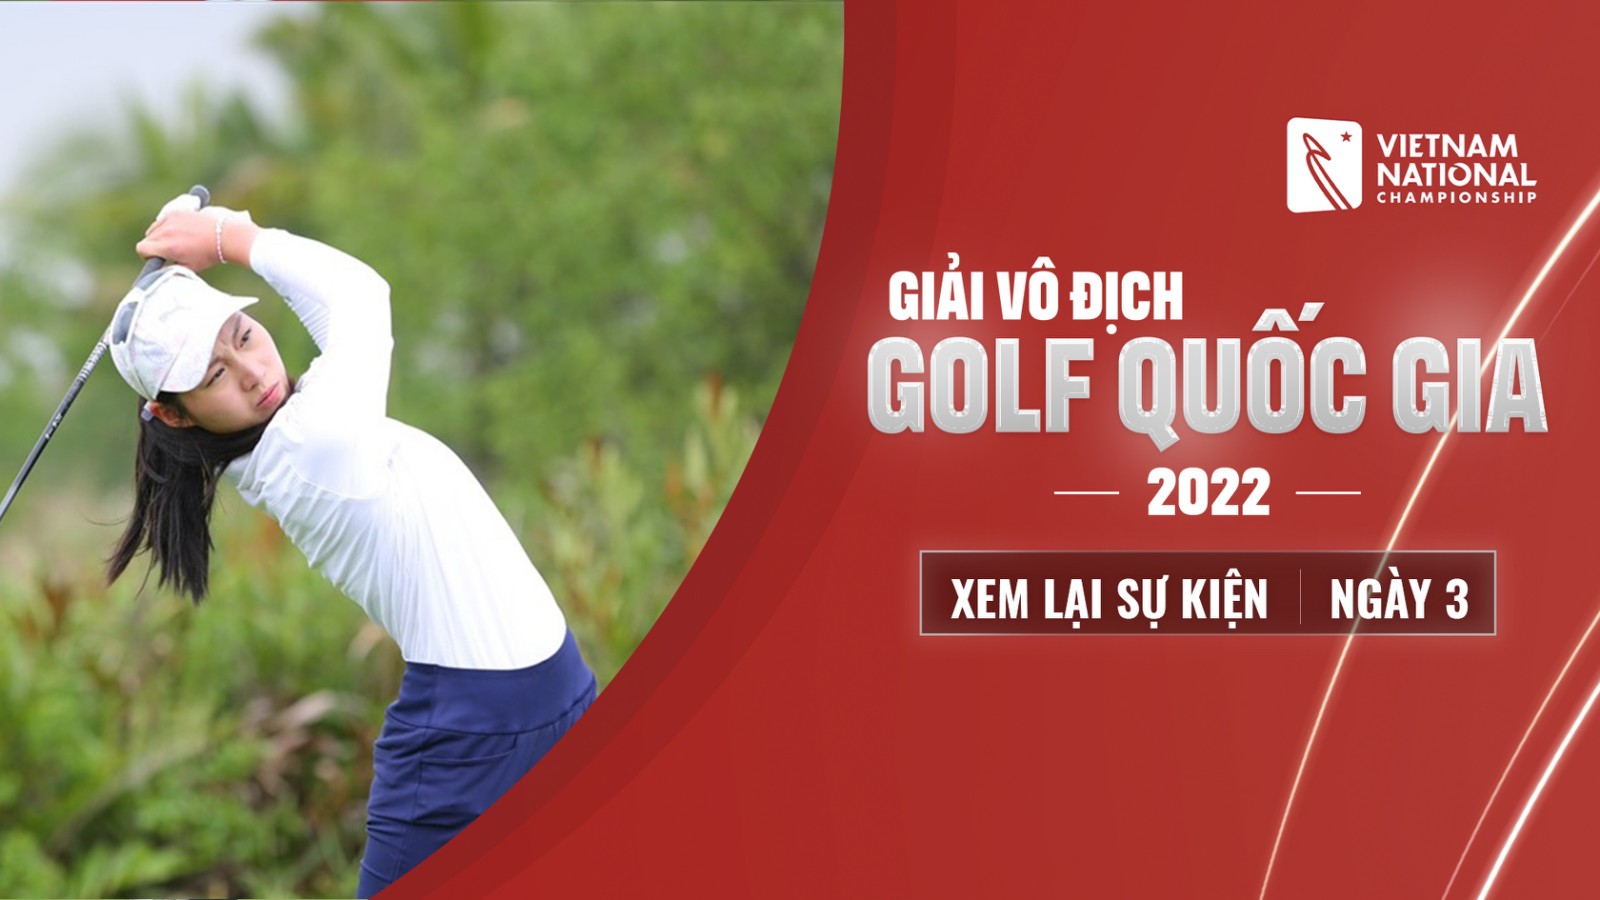 Giải Vô địch Golf Quốc gia 2022: Ngày 3 - Giải Vô địch Golf Quốc gia 2022